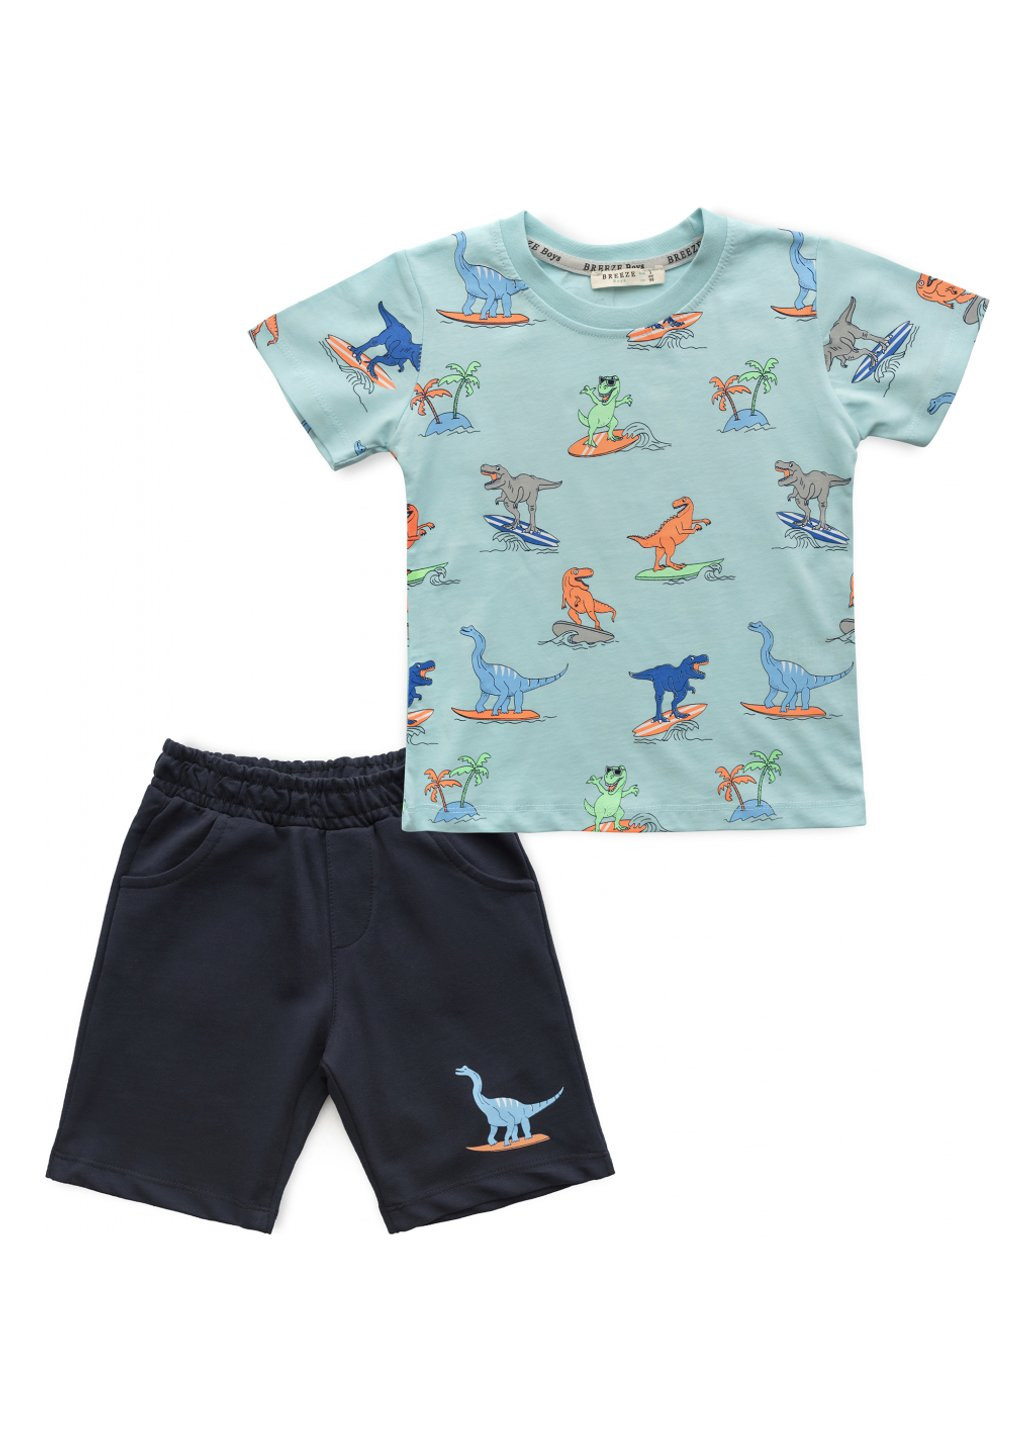 Голубой демисезонный набор детской одежды с динозаврами (16404-110b-blue) Breeze